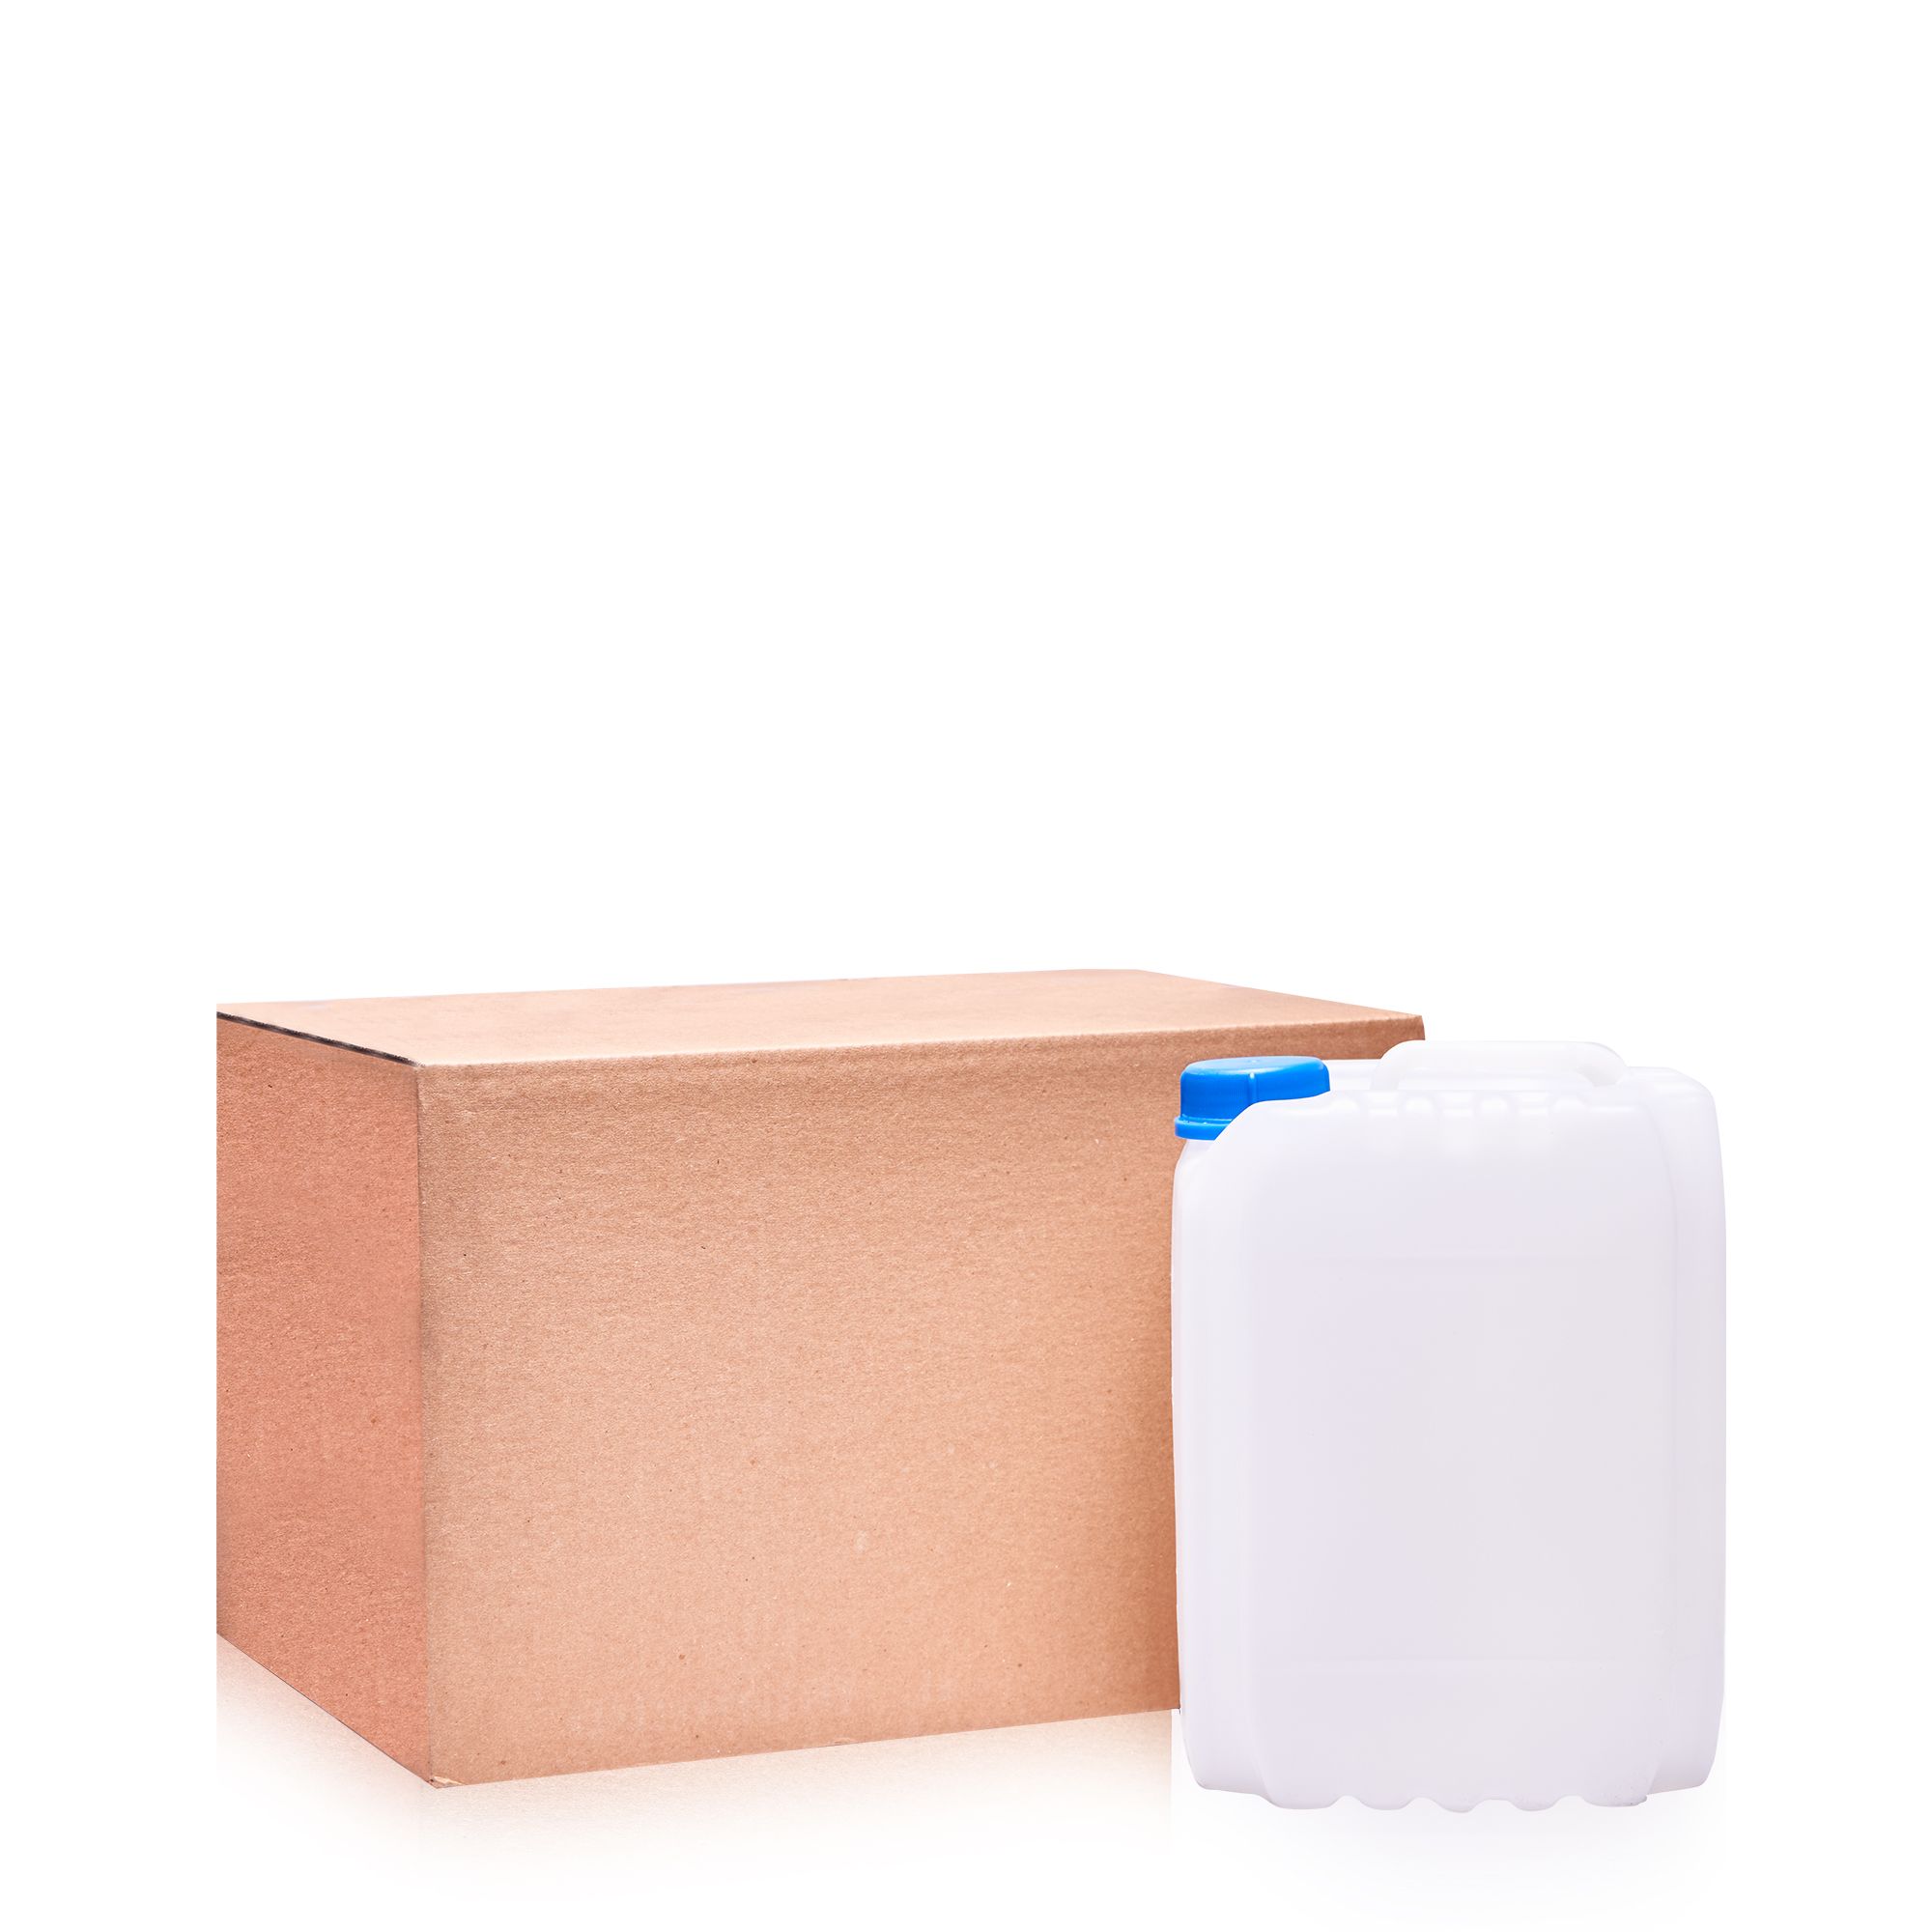 ХИТДезЛайт дезинфицирующее средство — канистра с картонной коробкой